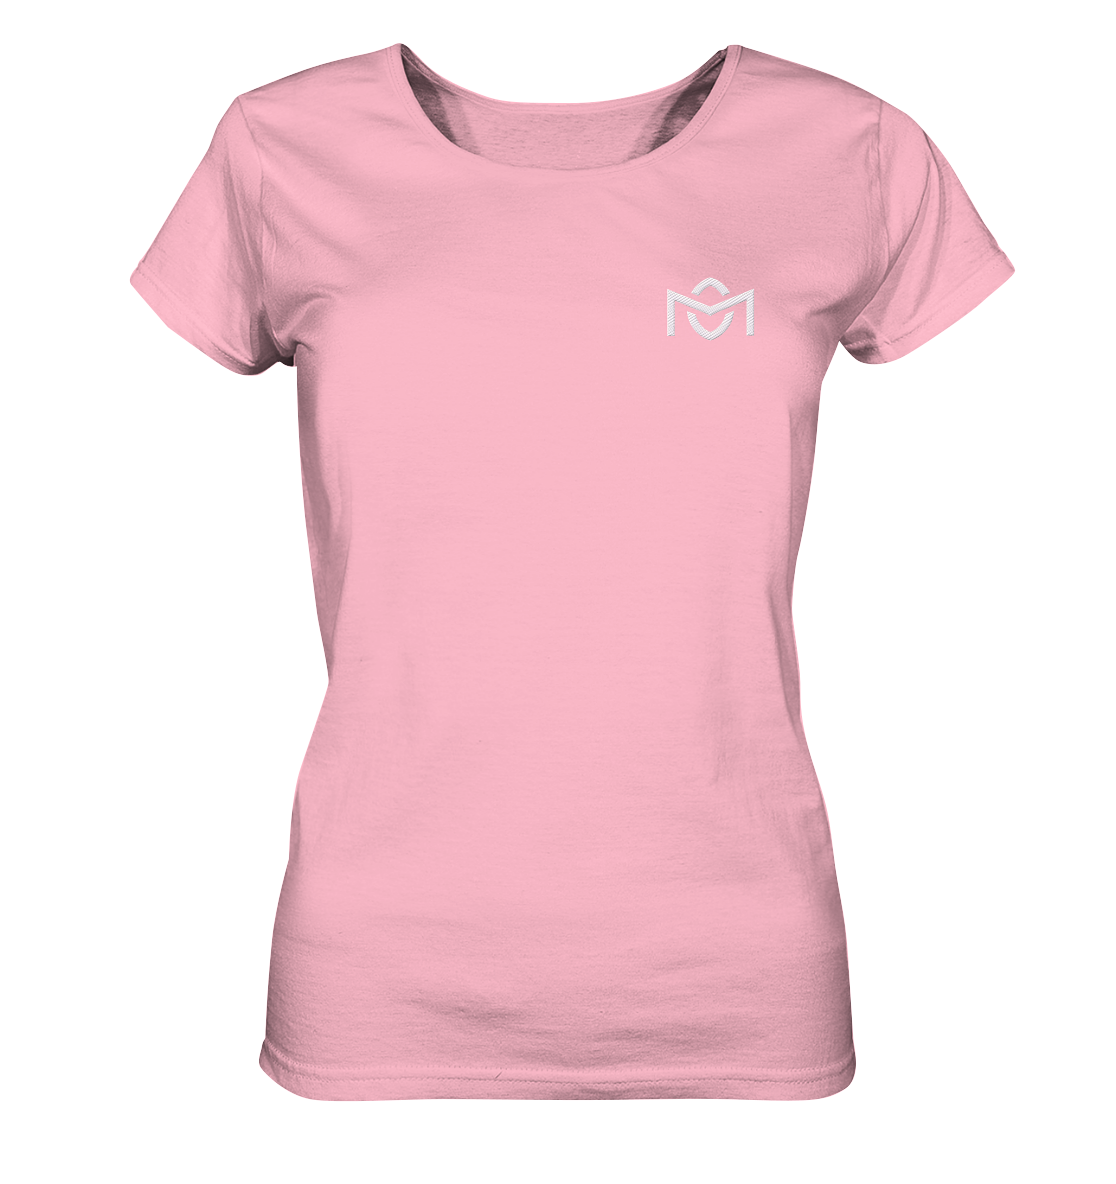 Cosmic OM | Premium Organic Ladies T-Shirt (Embroidered)